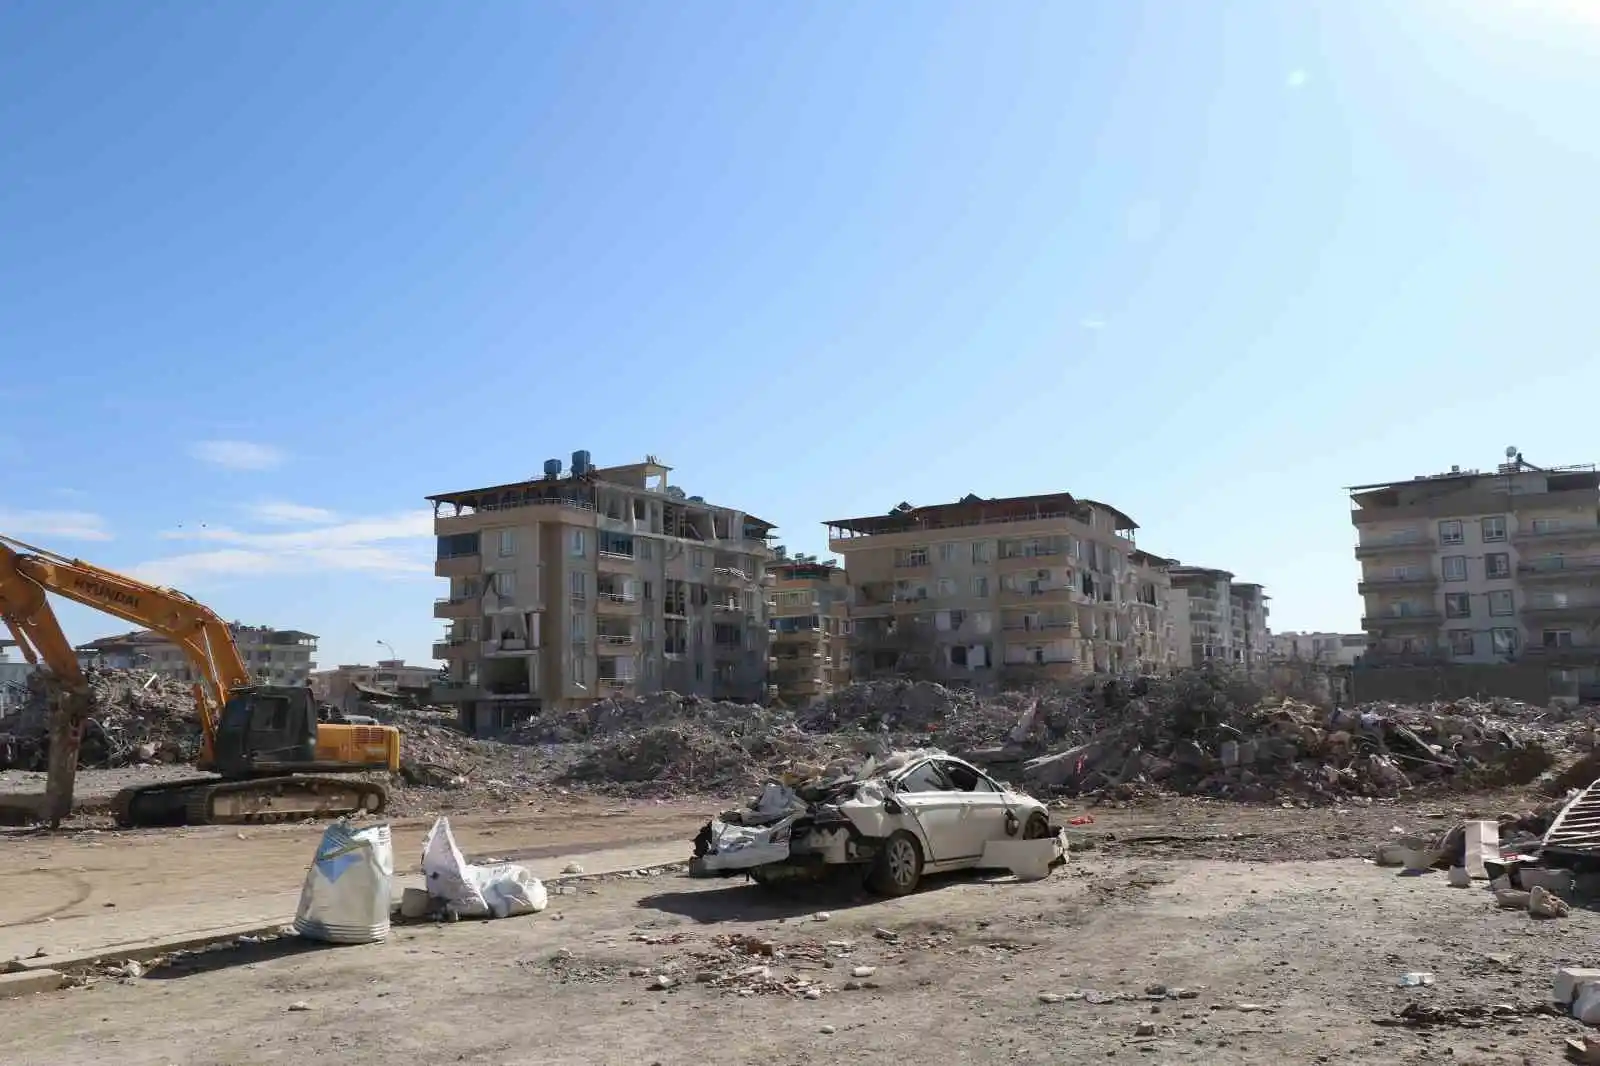 Depremlerde en fazla hasar alan ilçelerin başında gelen Nurdağı, havadan görüntülendi
